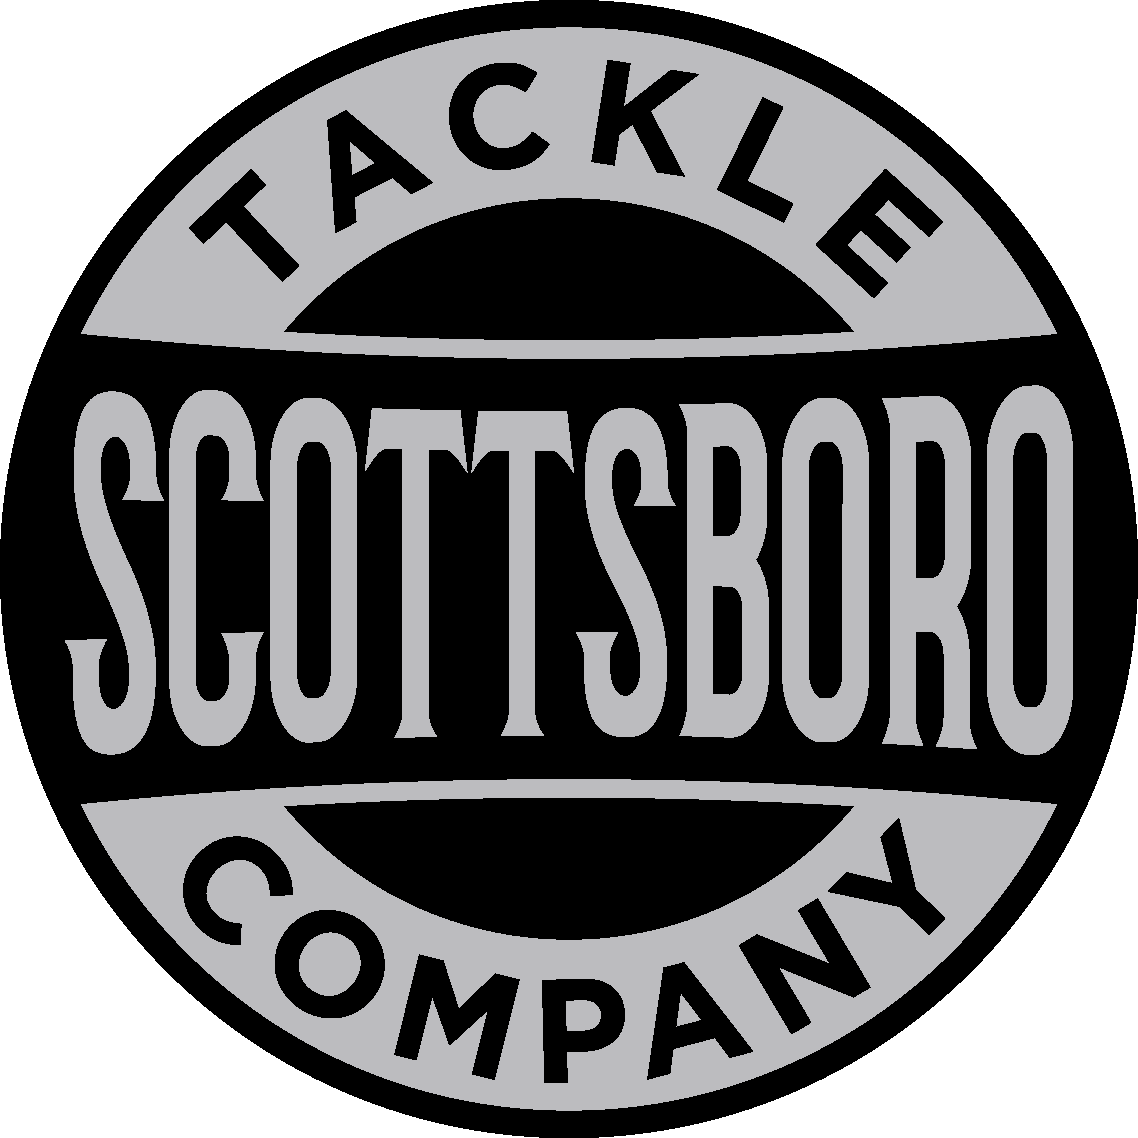 Scottsboro Tackle Co.